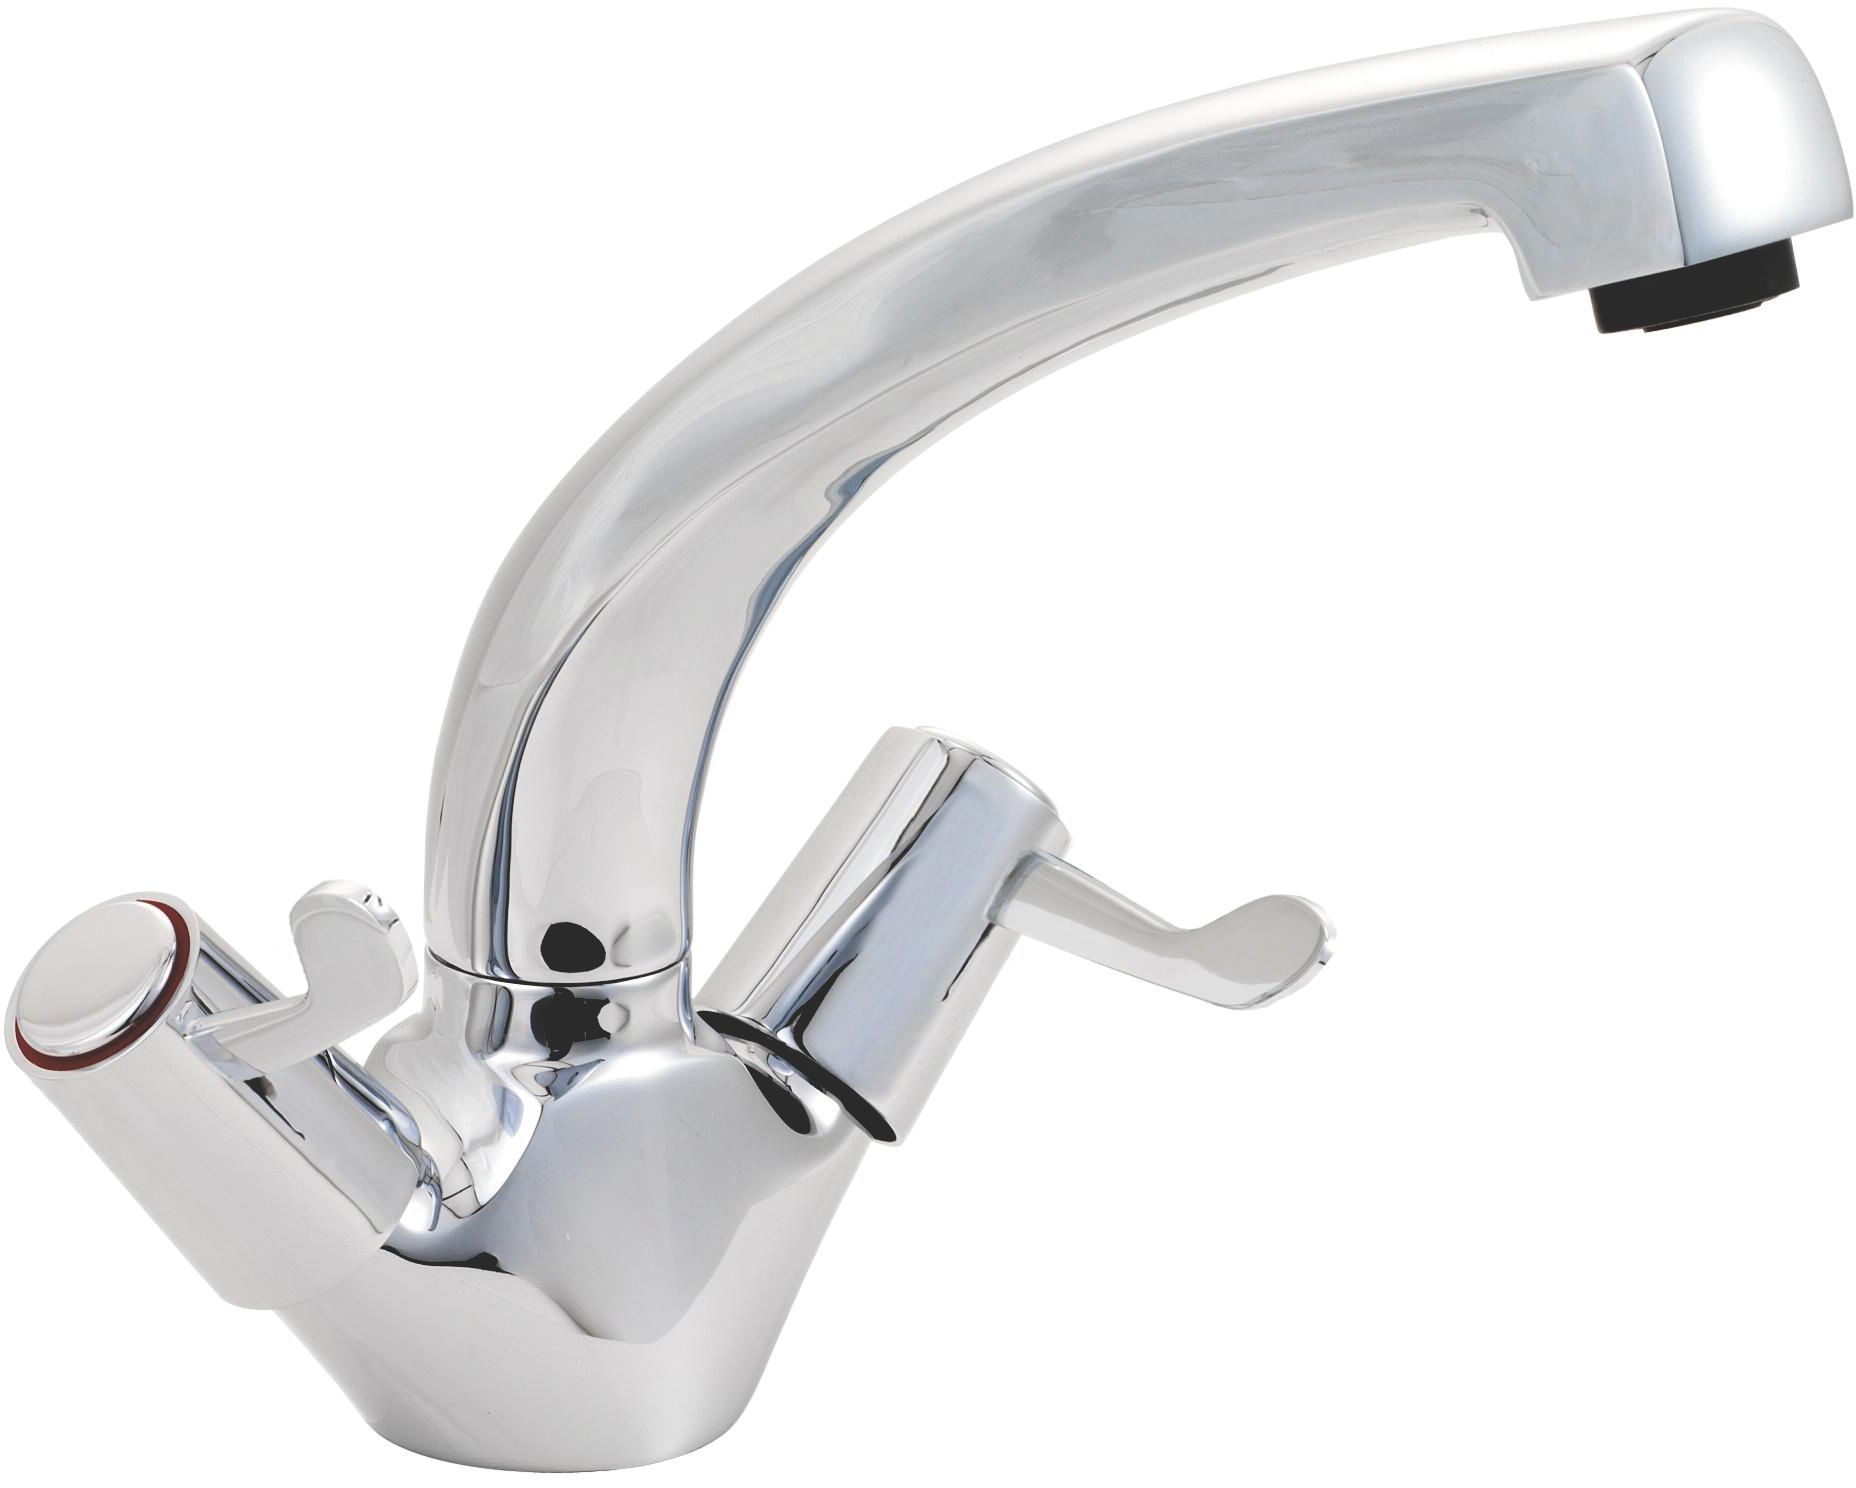 diy kitchen sink taps